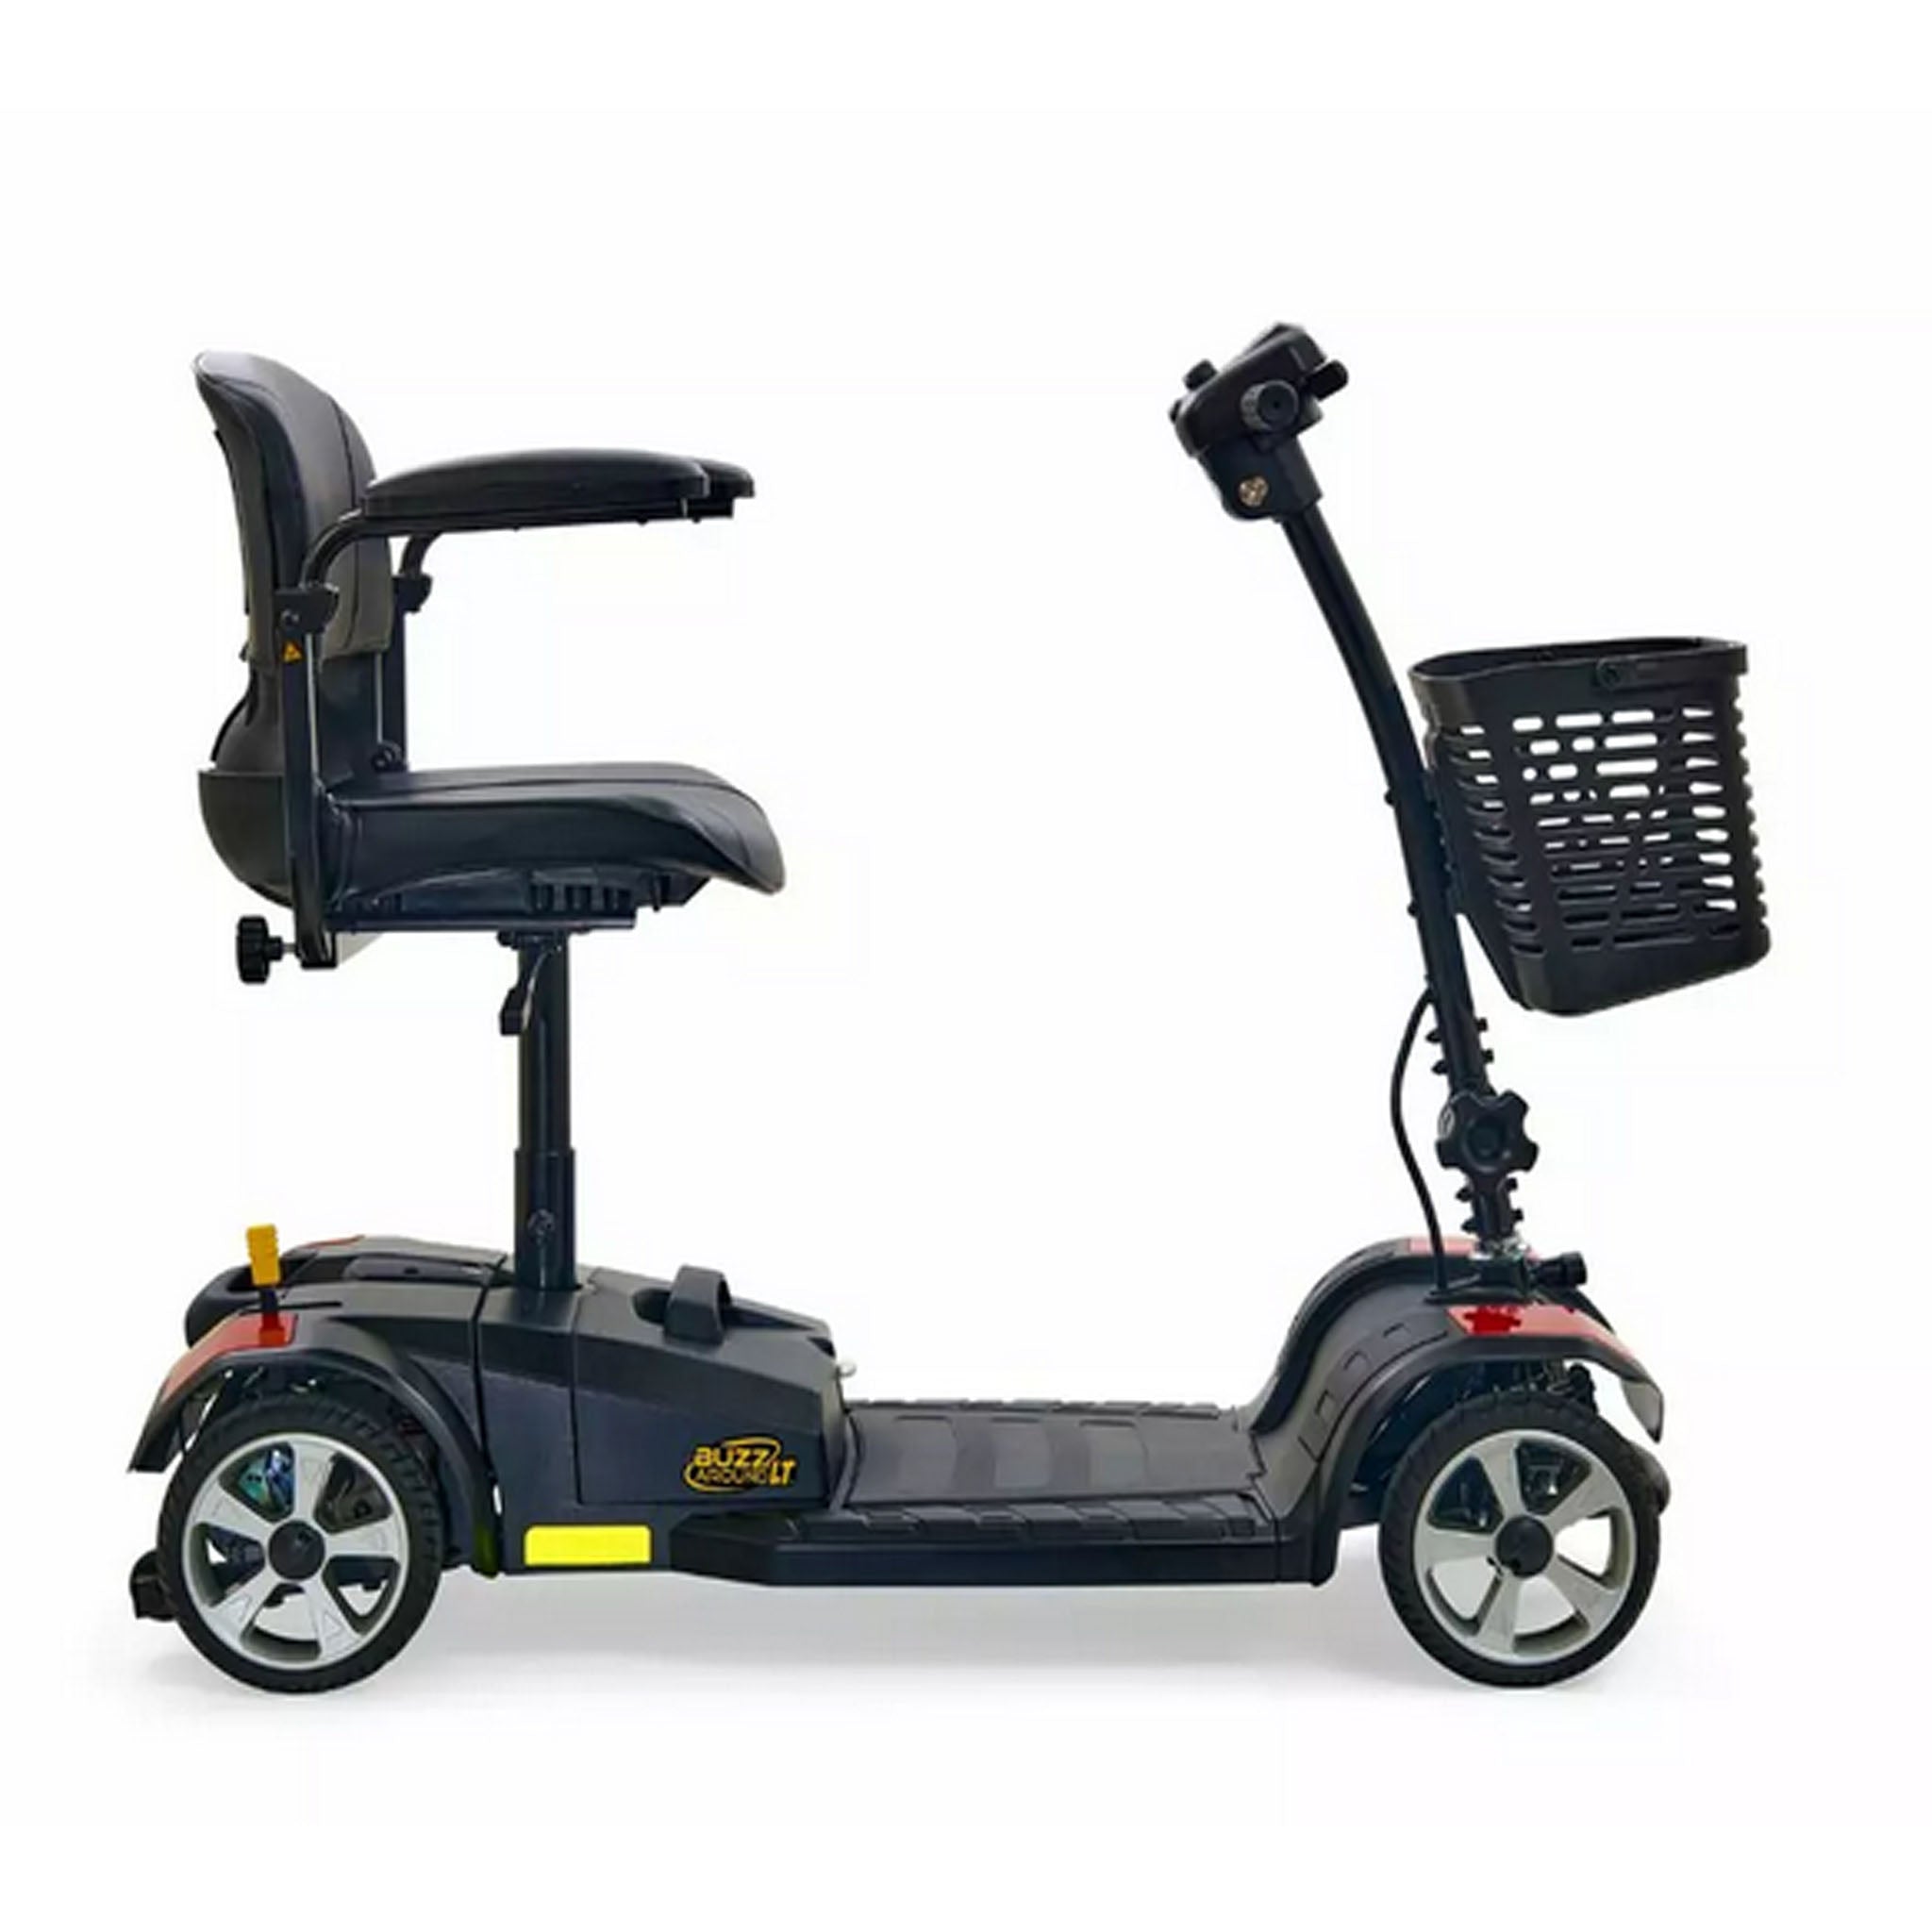 Golden Technologies Buzzaround LT 4 Wheel Scooter